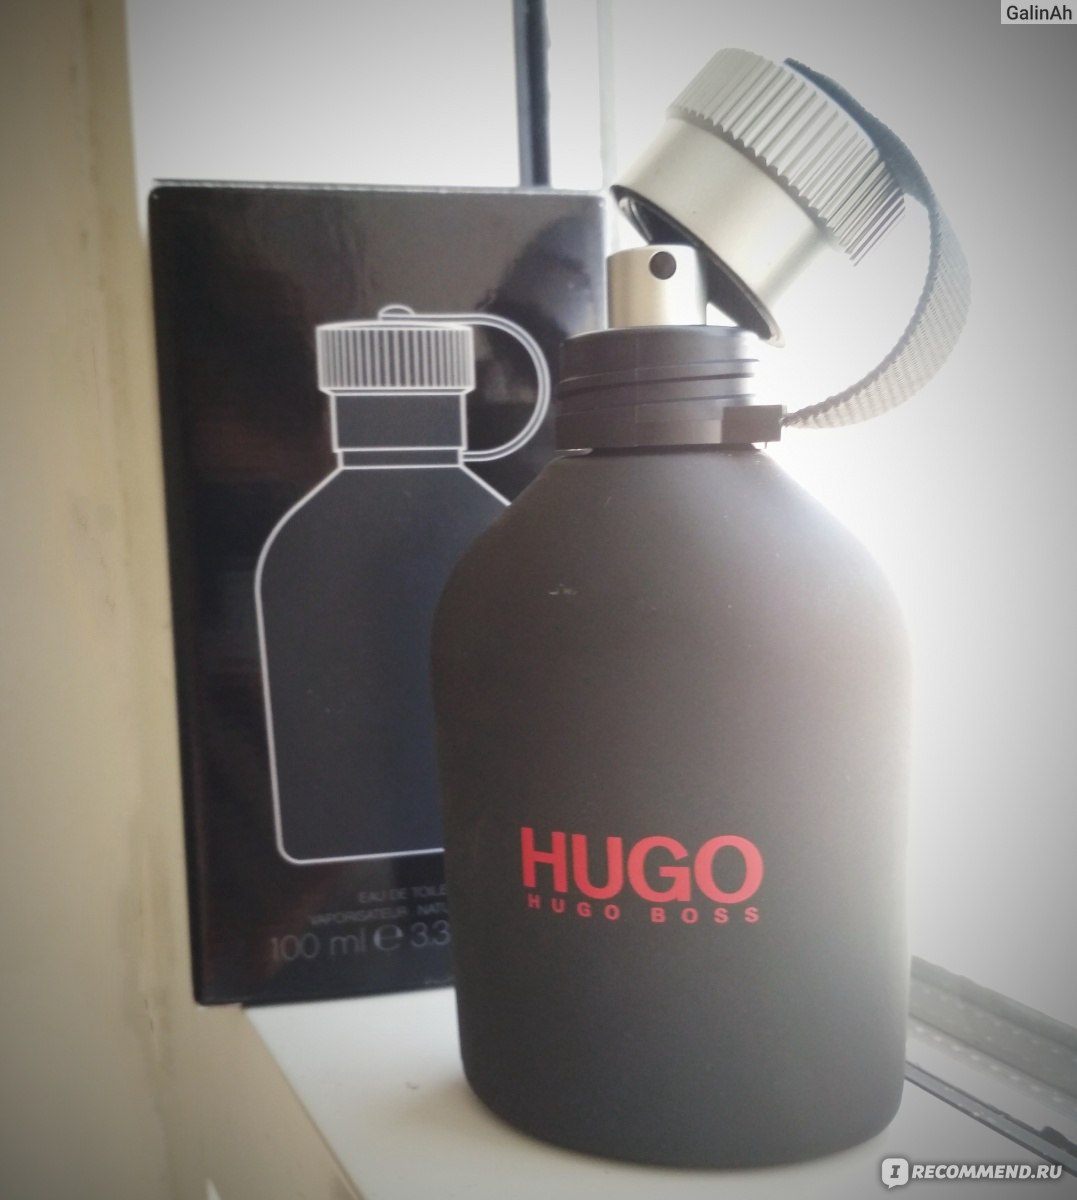 Летуаль хуго босс. Hugo Boss just different. Hugo Boss just different магнит Косметик. Летуаль Hugo Boss just different. Хуго туал вода.